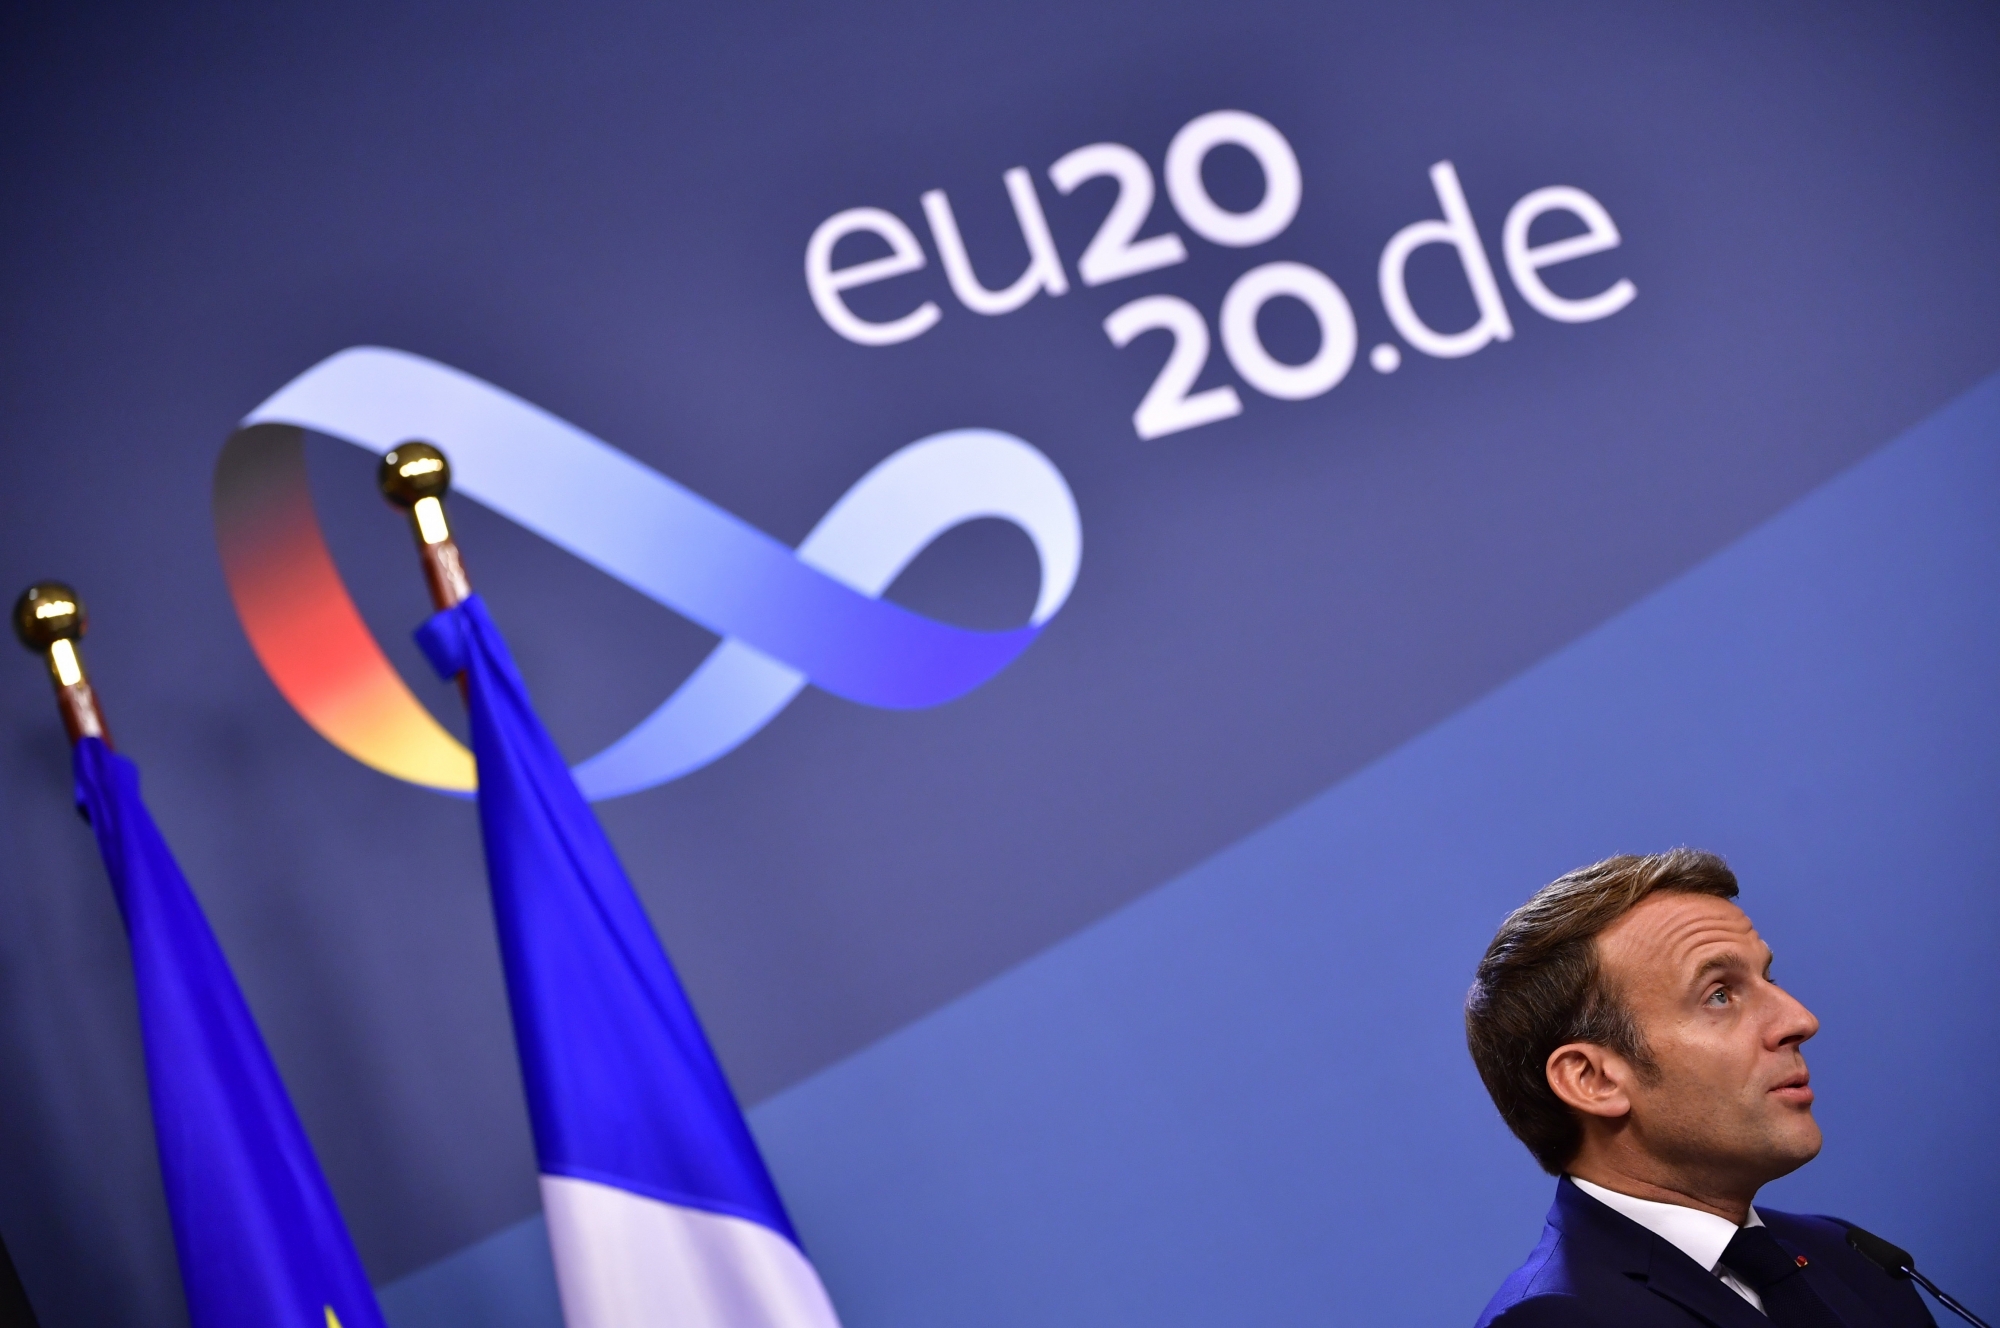 Ayant eu gain de cause et recevant 40 milliards d’euros, Emmanuel Macron est doublement gagnant.